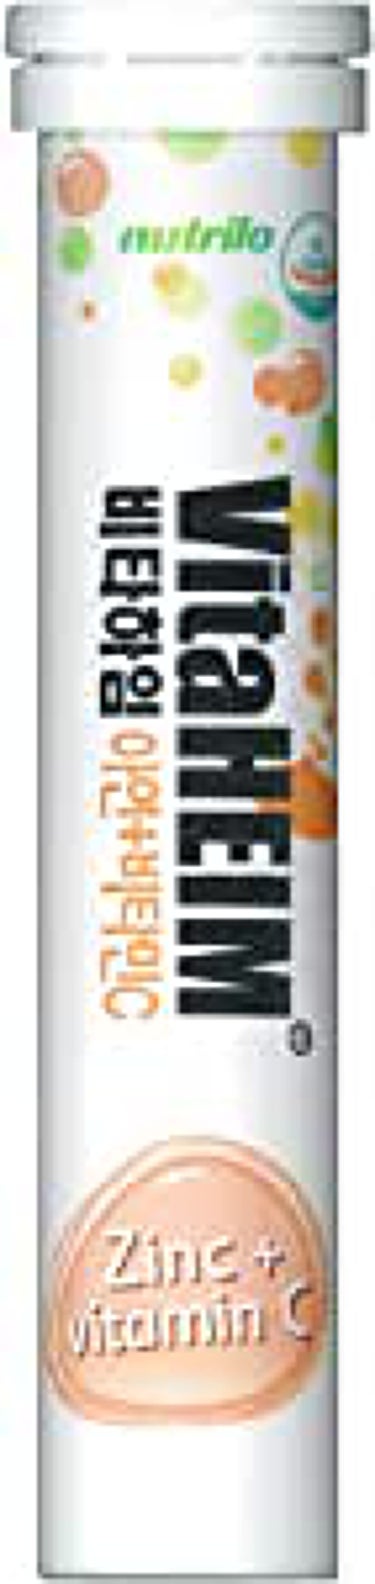 ビタハイム VitaHEIM 発泡ビタミン剤 韓国 ビタミンC vitaminC